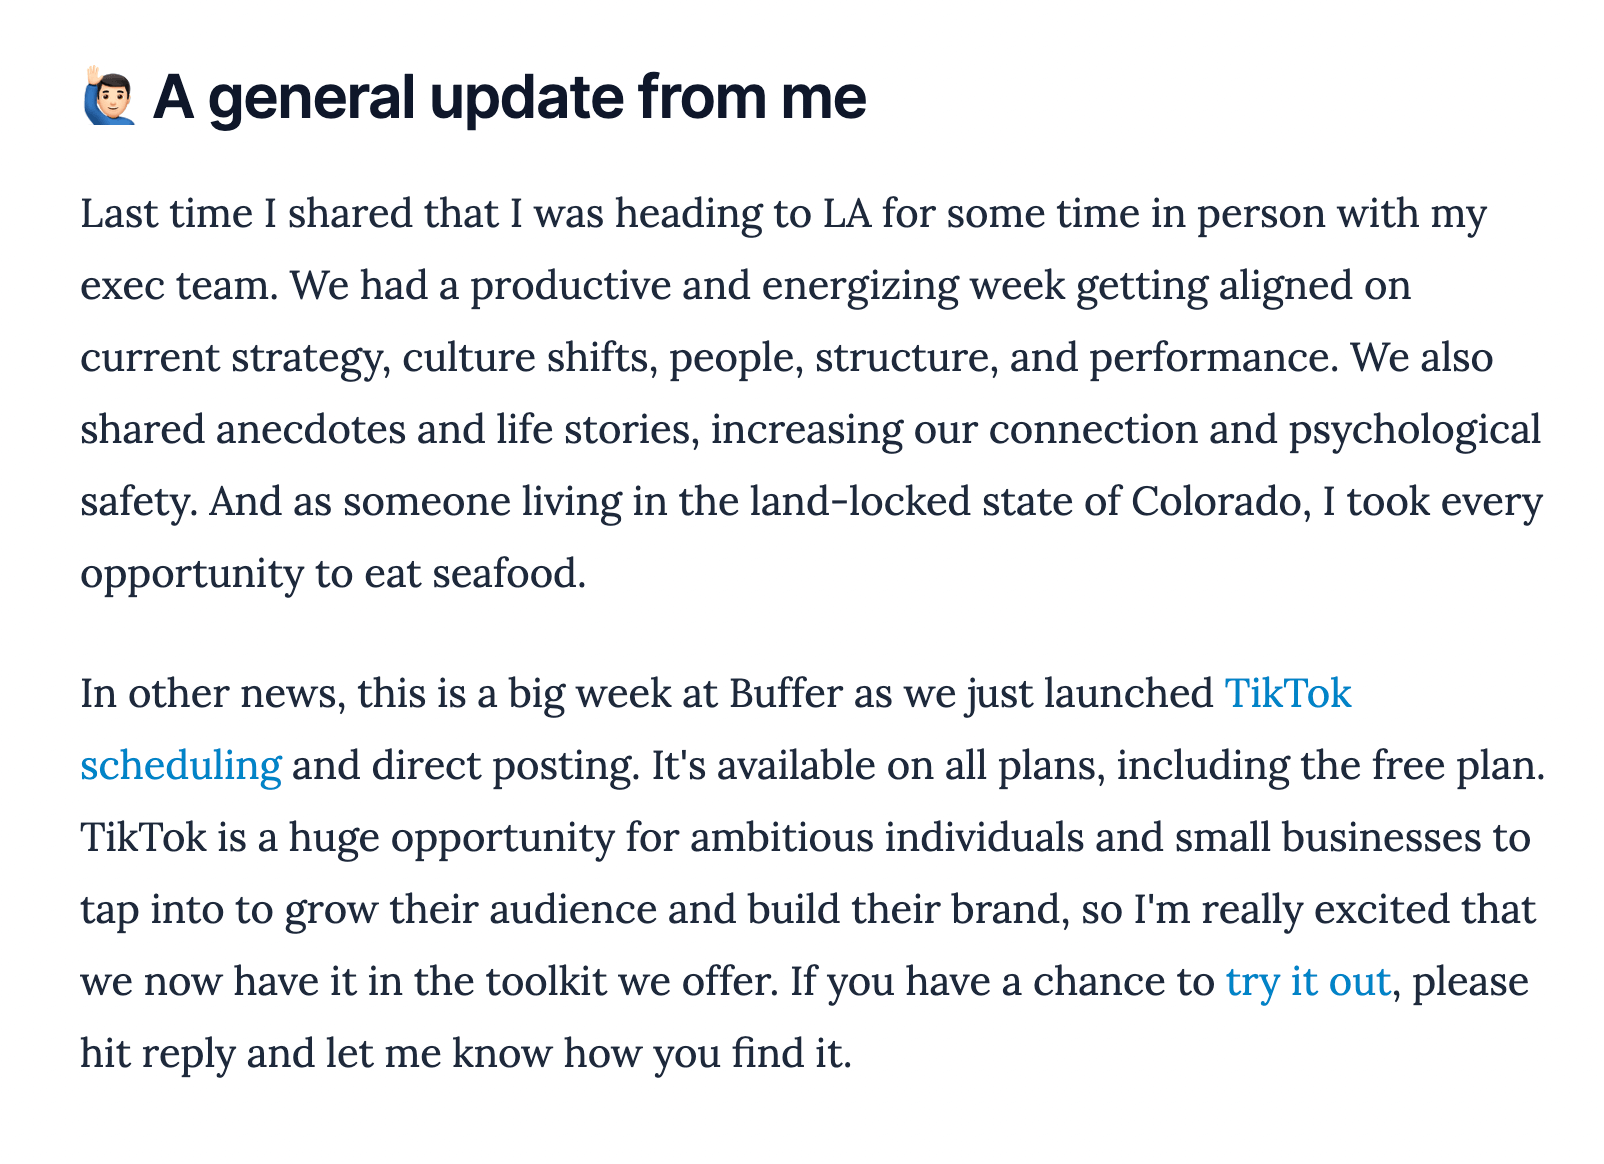 A screenshot from Joel's newsletter